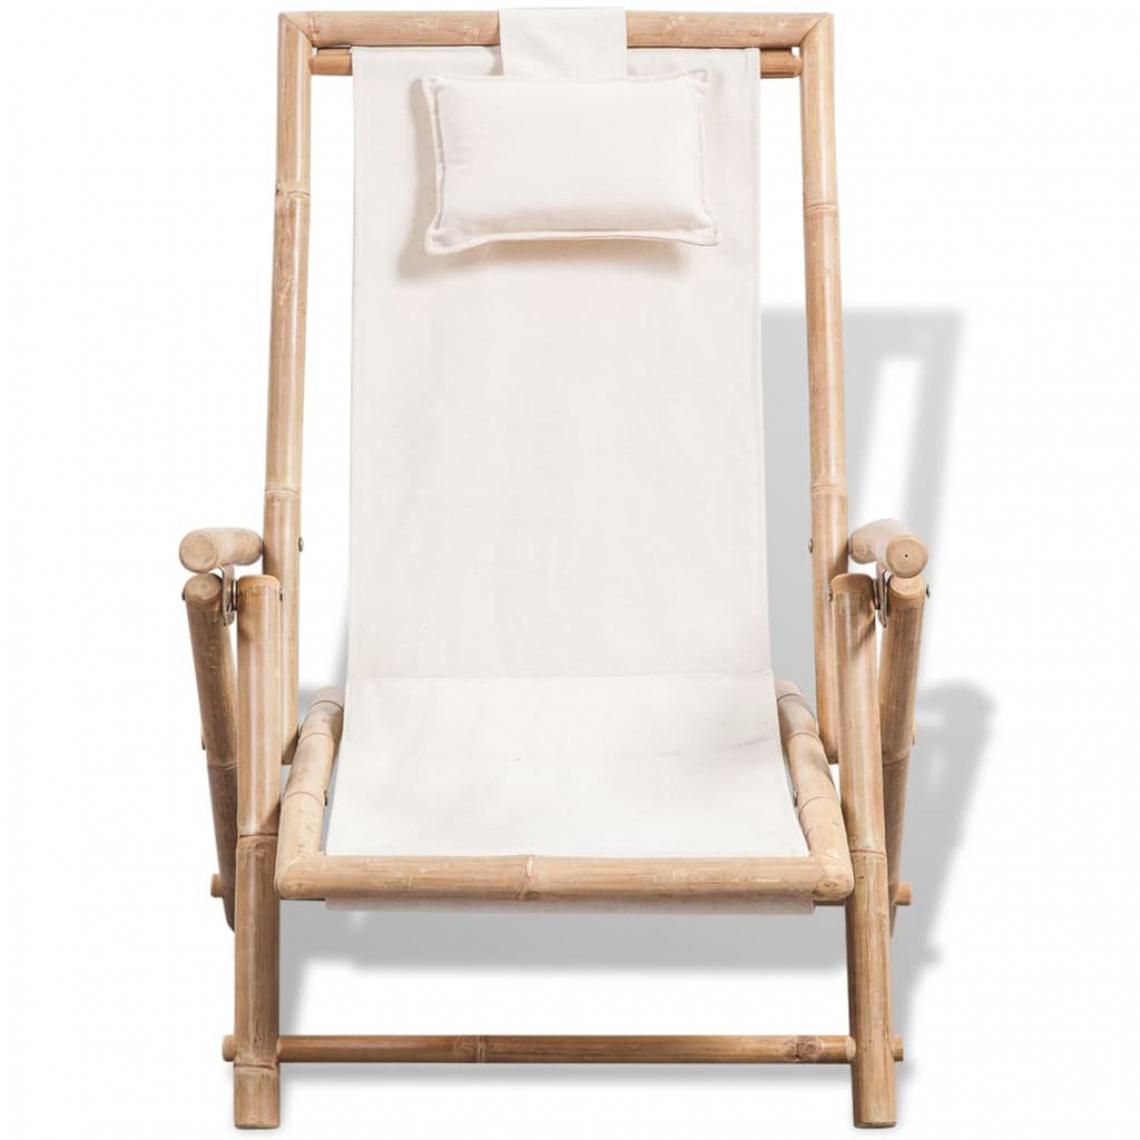 Icaverne - Icaverne - Bains de soleil categorie Chaise de terrasse Bambou - Transats, chaises longues